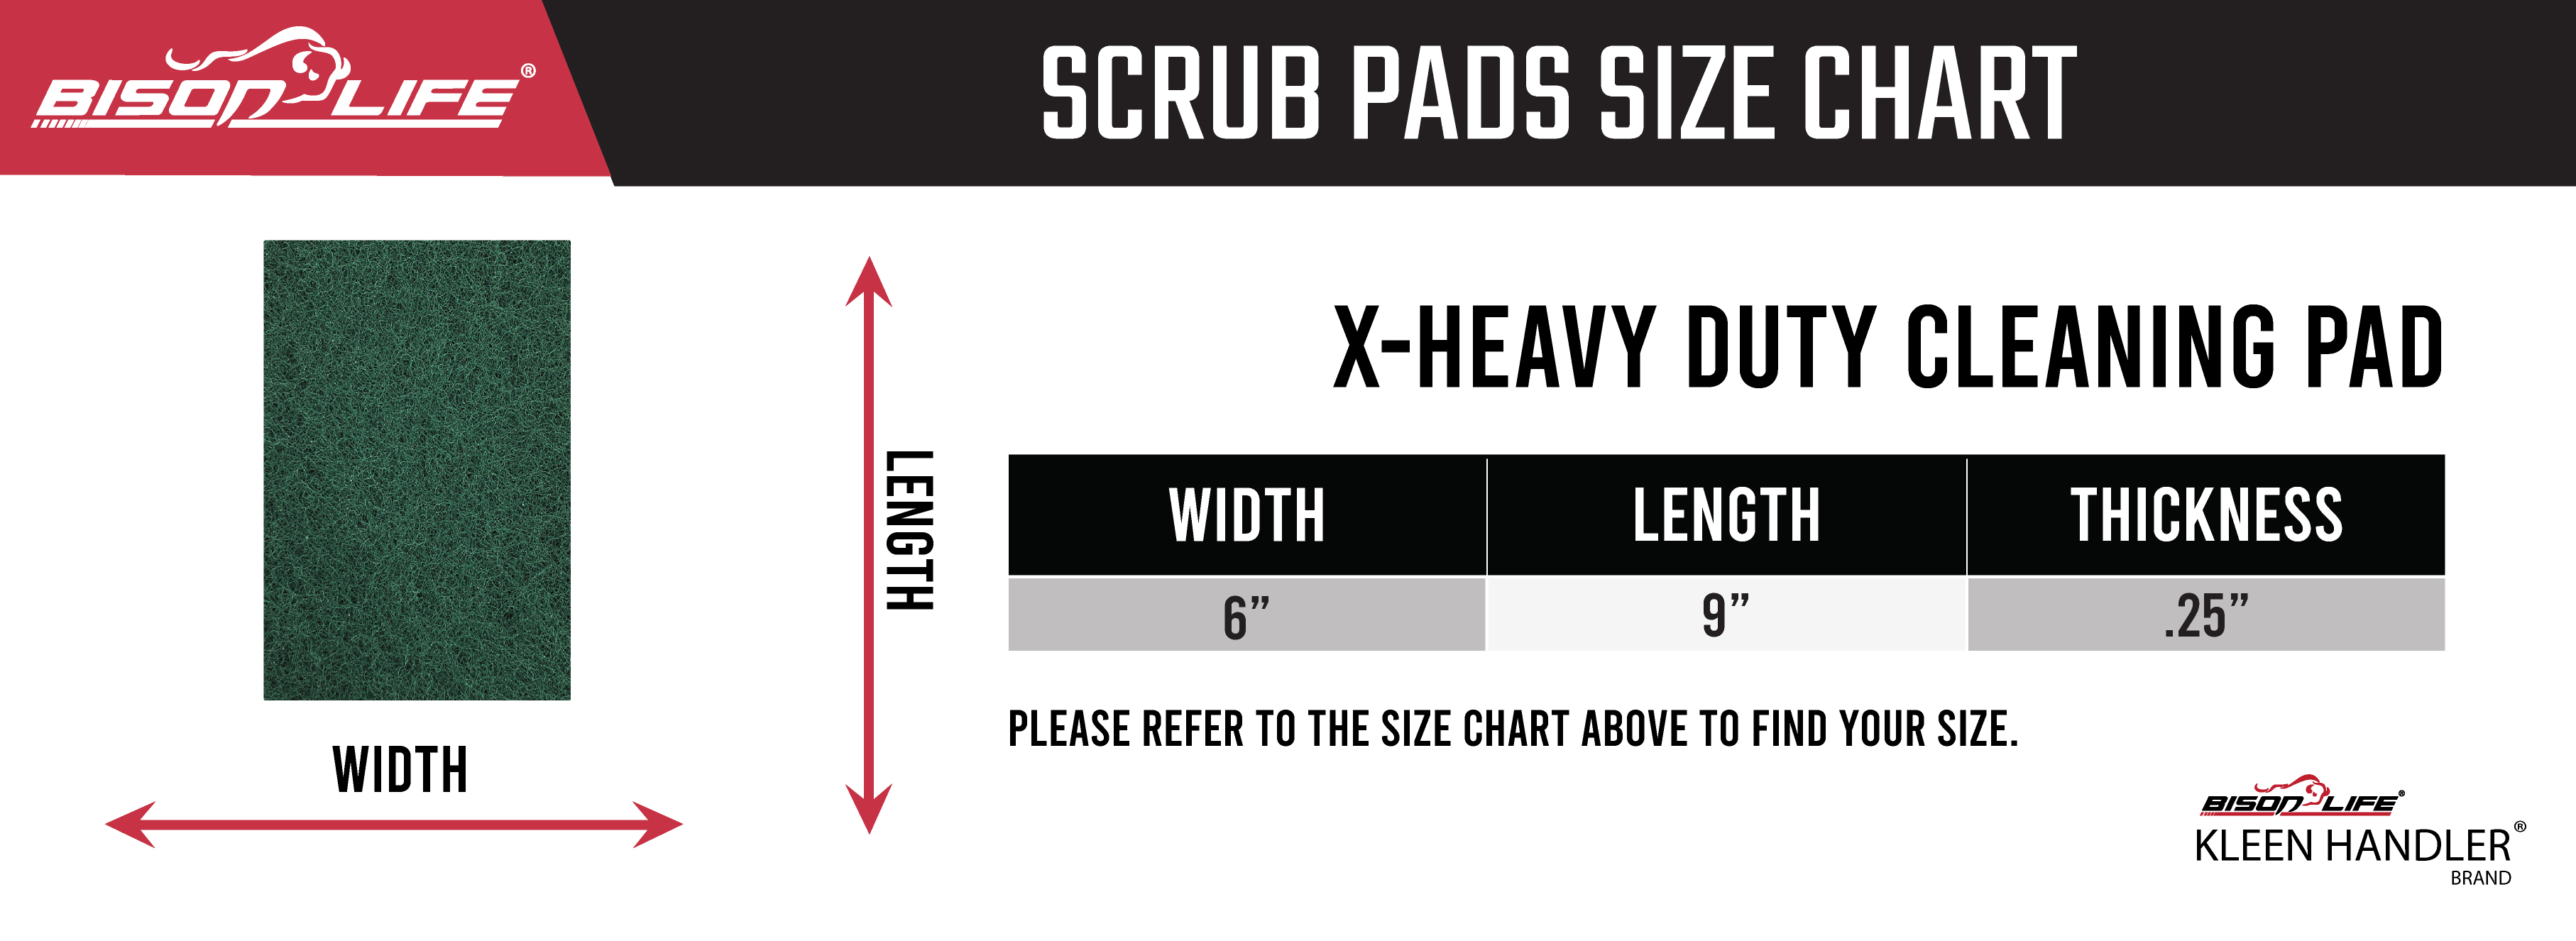 scrub pad size chart